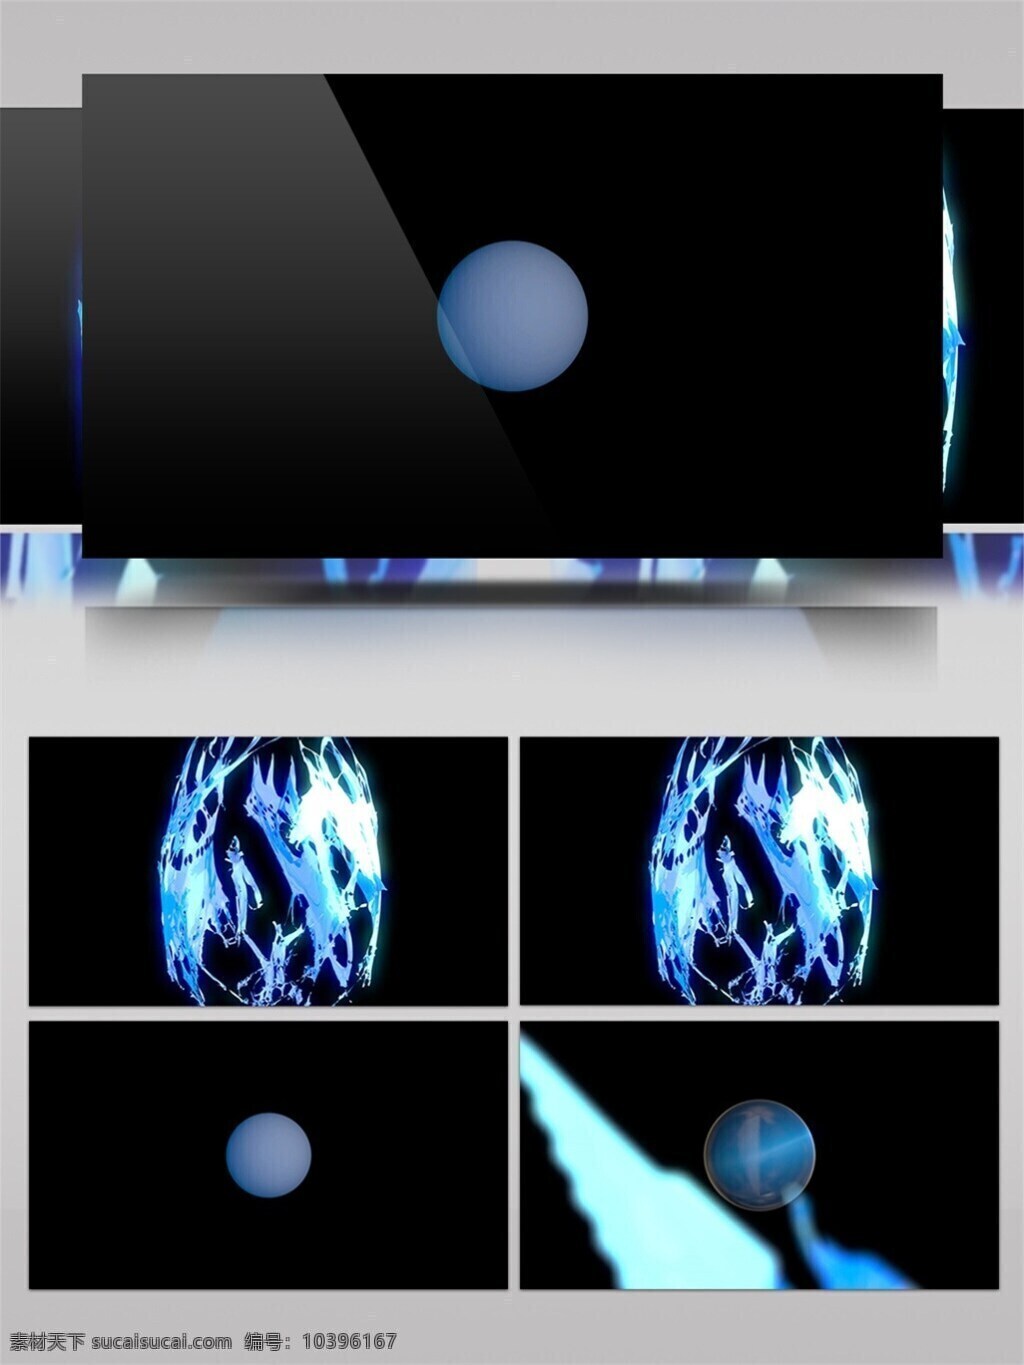 蓝色 发光 球体 分解 爆炸 视频 灯光 粒子 视频素材 动态视频素材